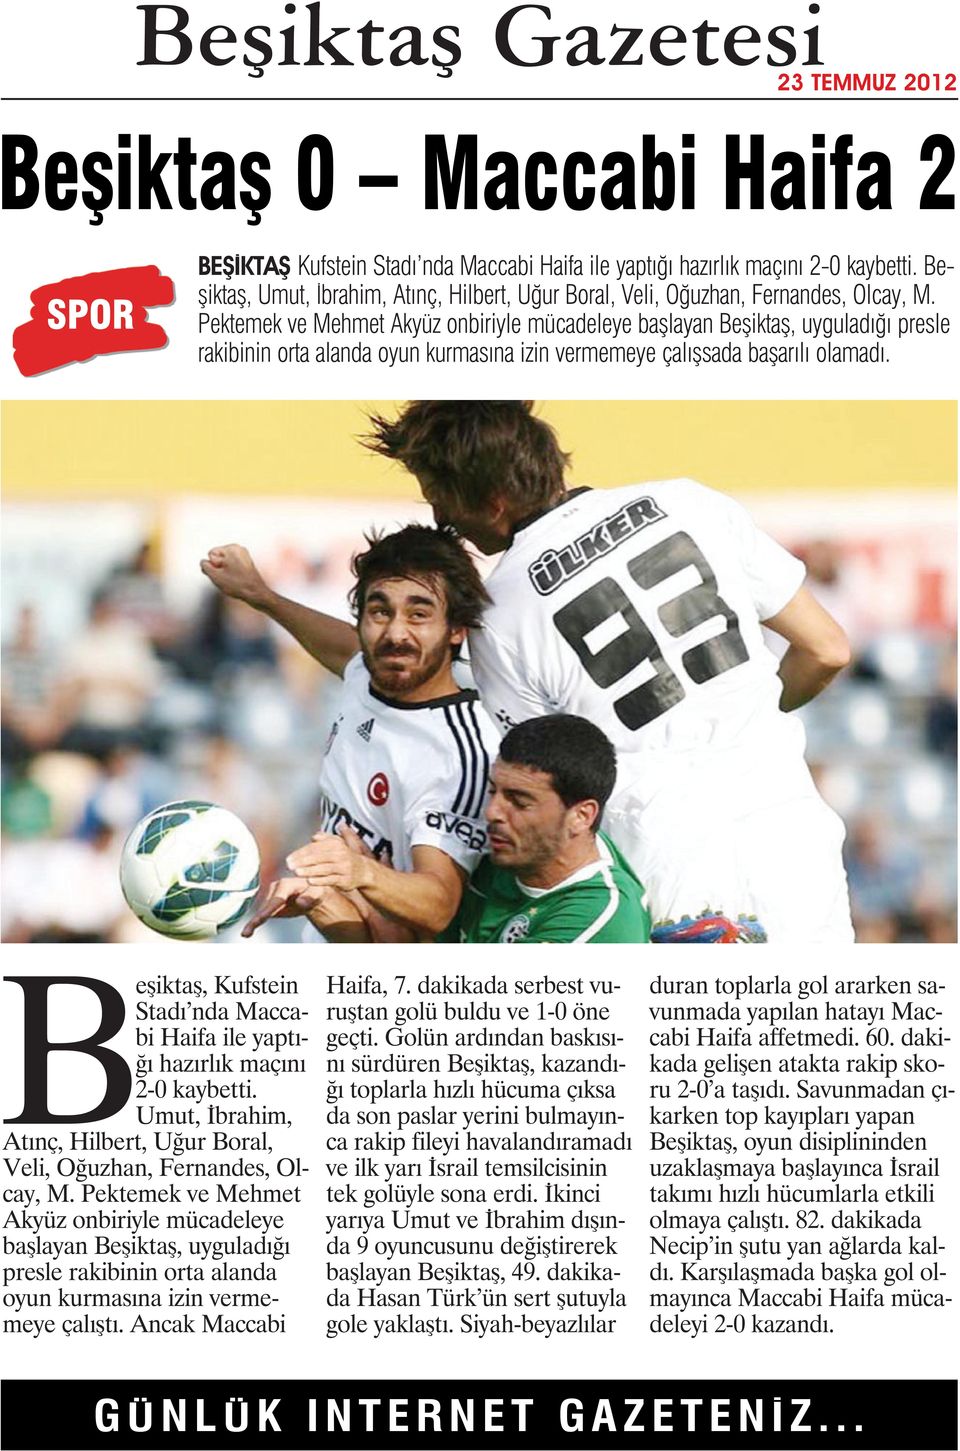 Beşiktaş, Kufstein Stadı nda Maccabi Haifa ile yaptığı hazırlık maçını 2-0 kaybetti. Umut, İbrahim, Atınç, Hilbert, Uğur Boral, Veli, Oğuzhan, Fernandes, Olcay, M.